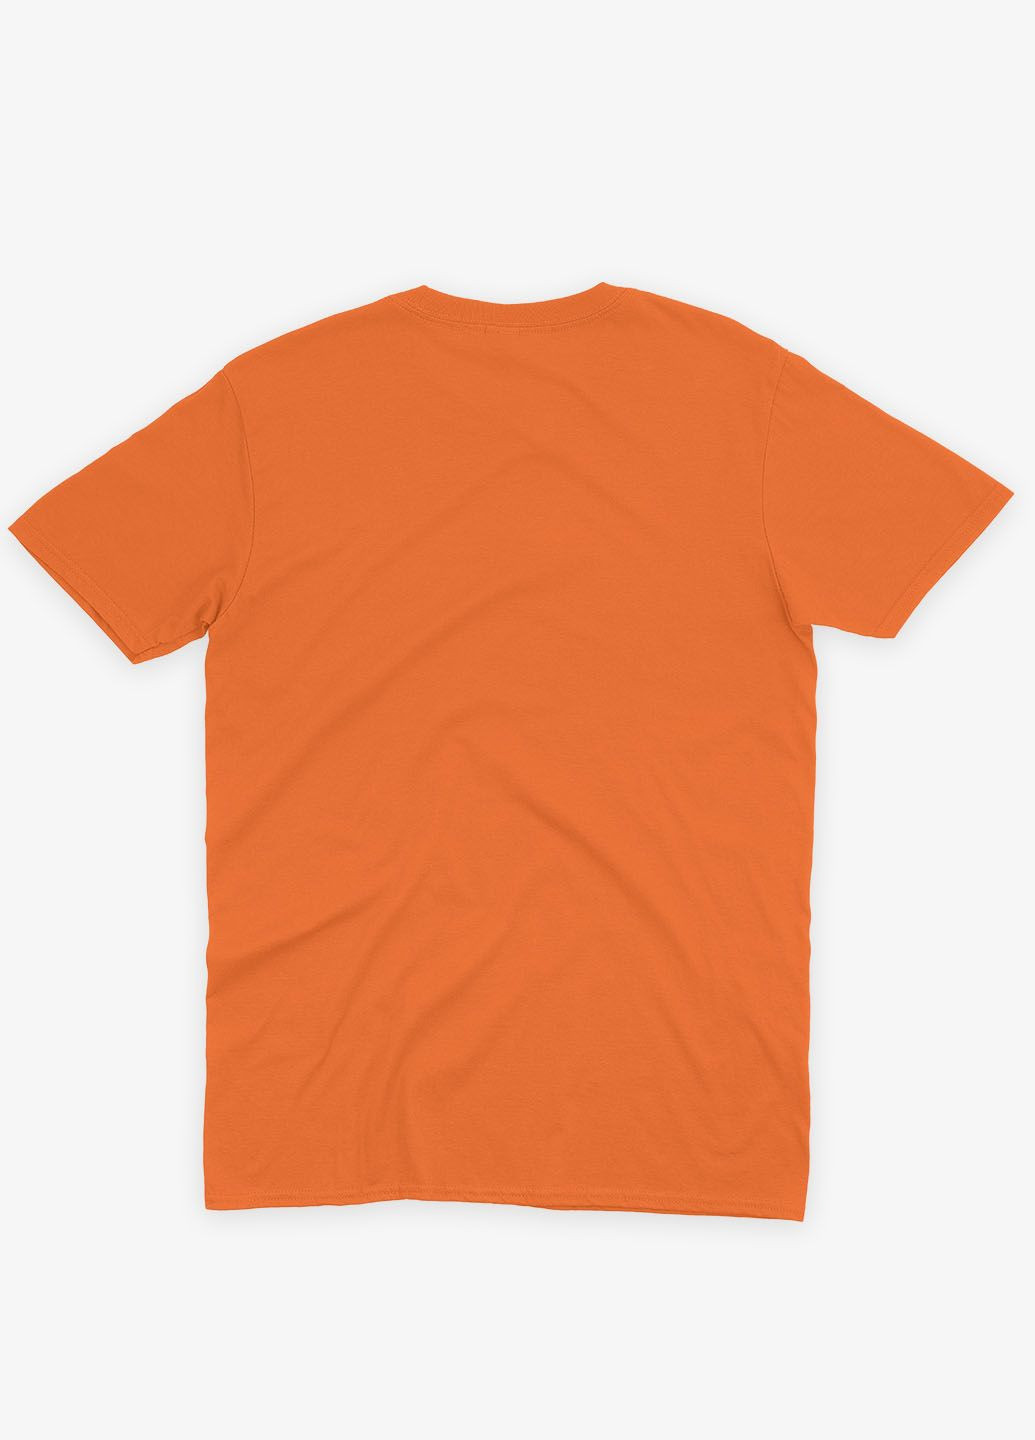 Оранжевая демисезонная футболка для мальчика с принтом супергероя - железный человек (ts001-1-ora-006-016-015-b) Modno